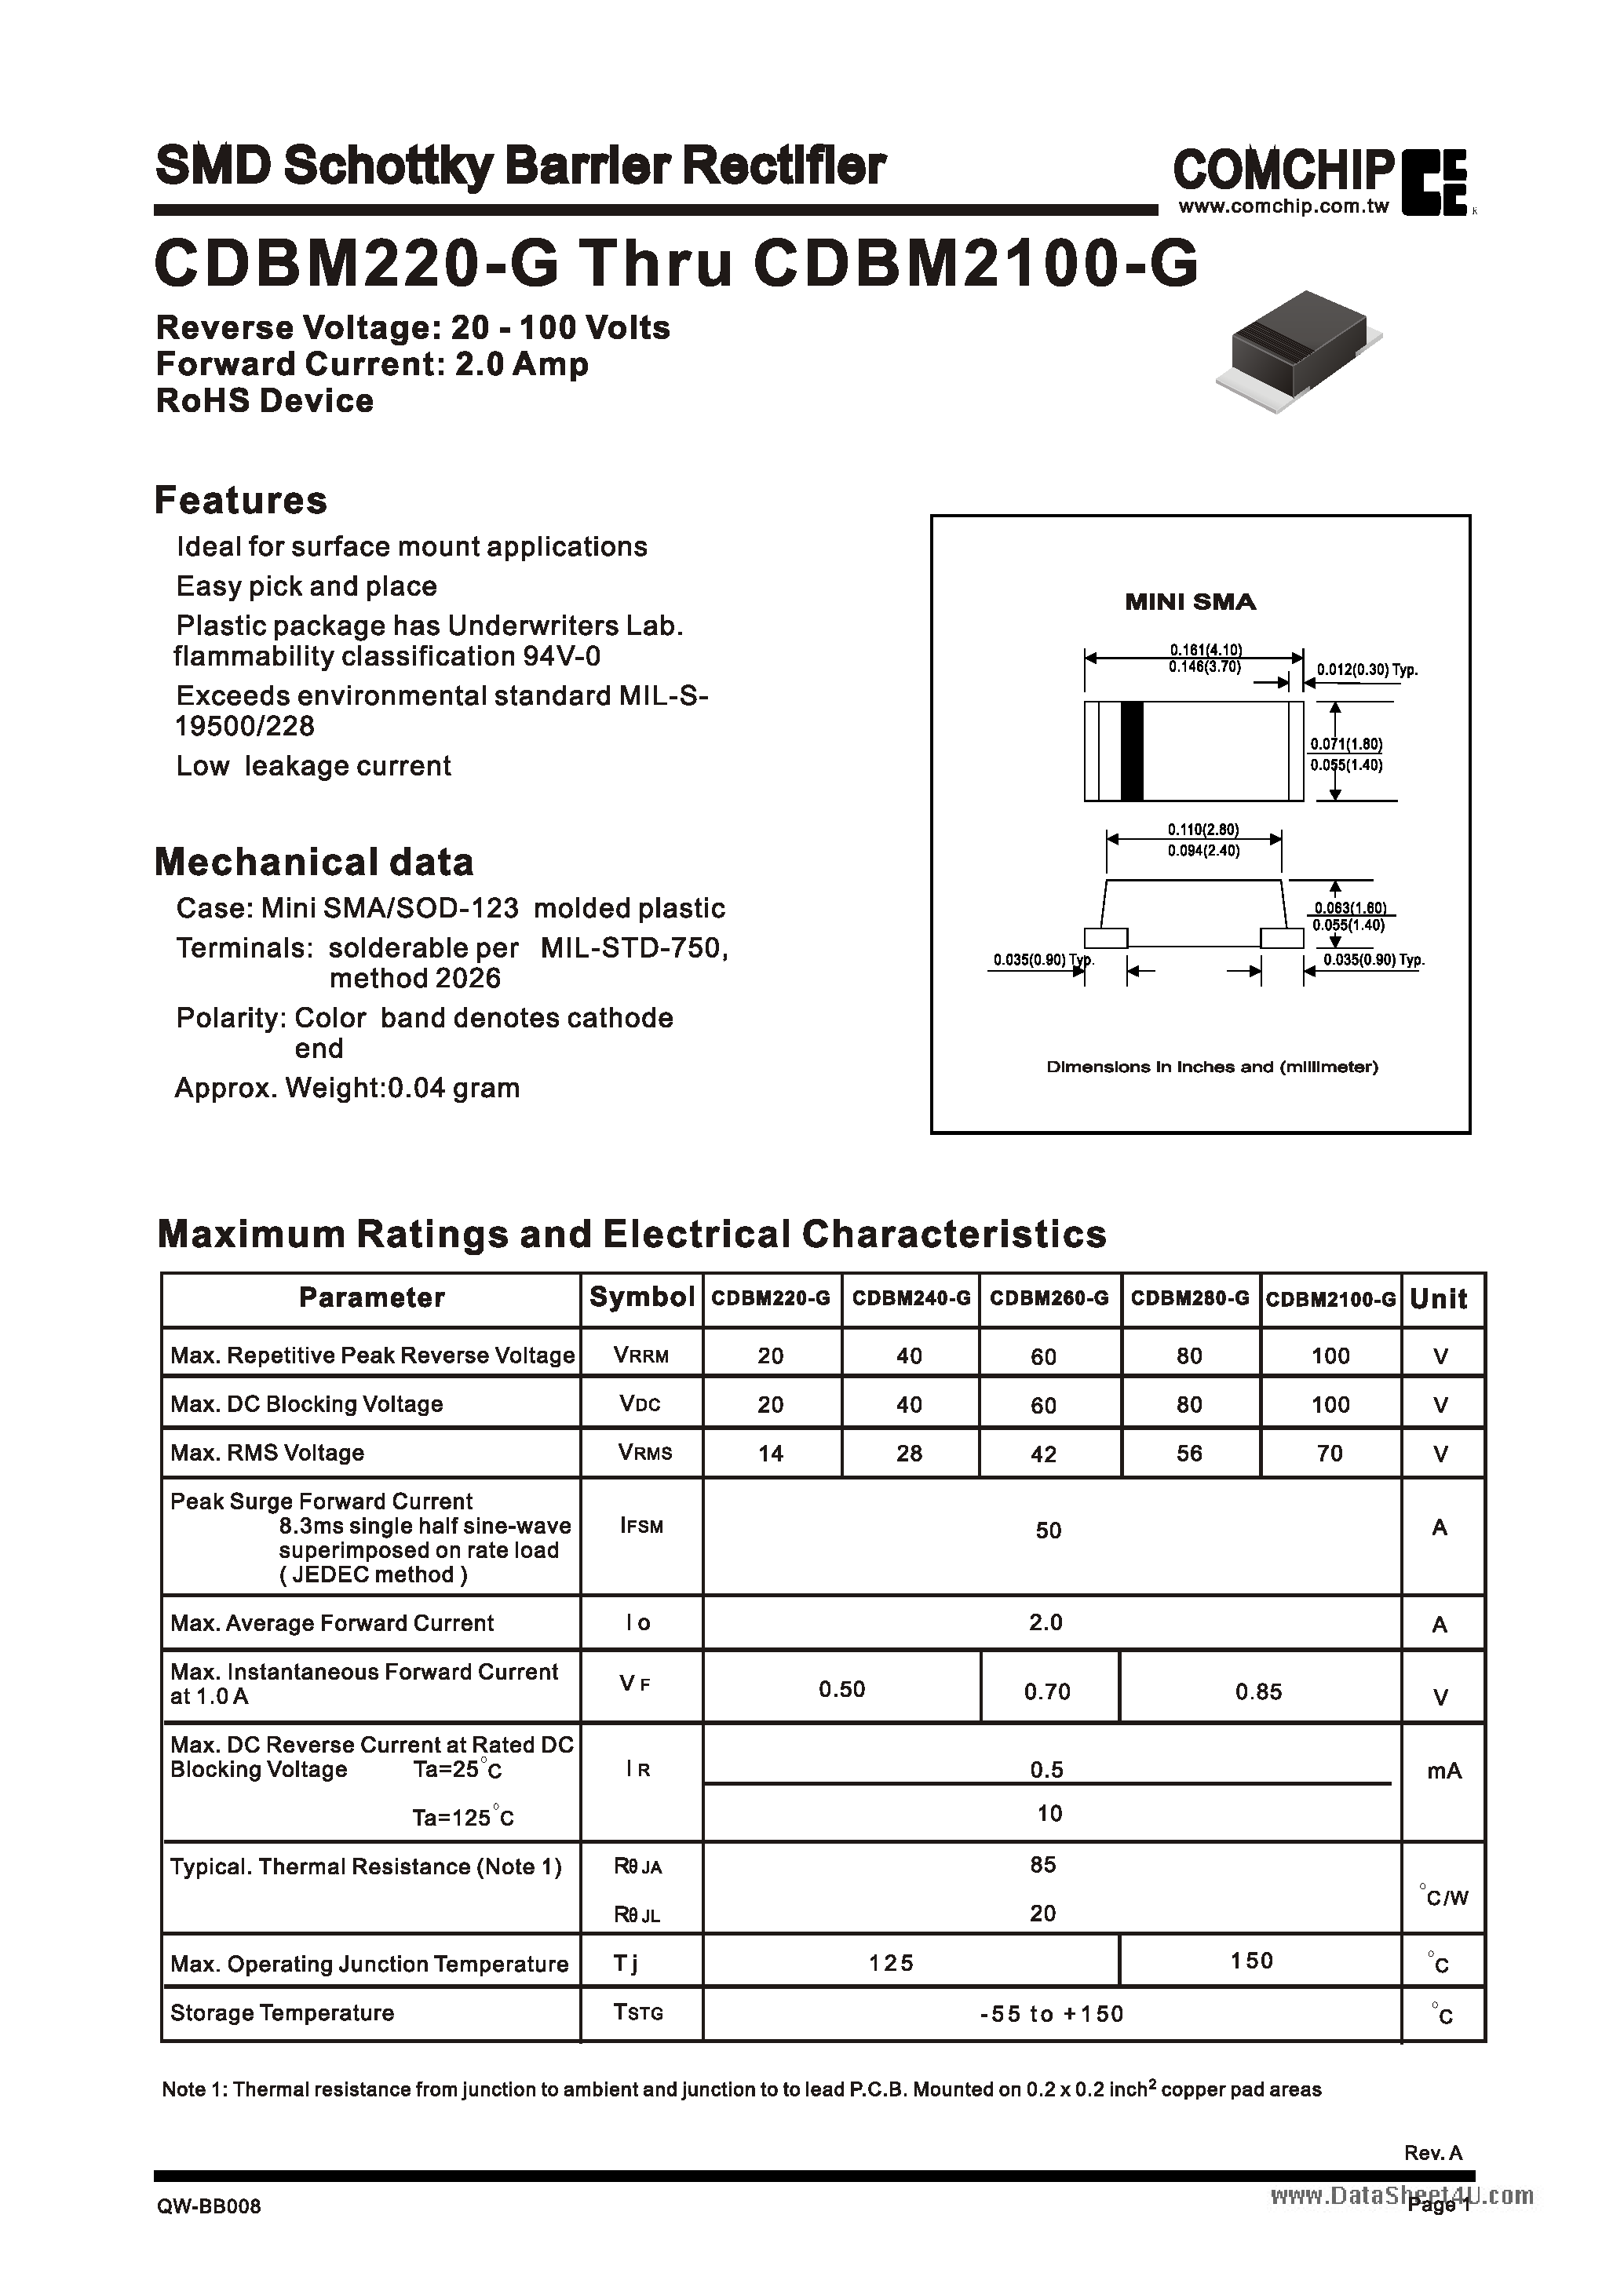 Даташит CDBM2100-G - (CDBM220-G - CDBM2100-G) SMD Schottky Barrier Rectifiers страница 1